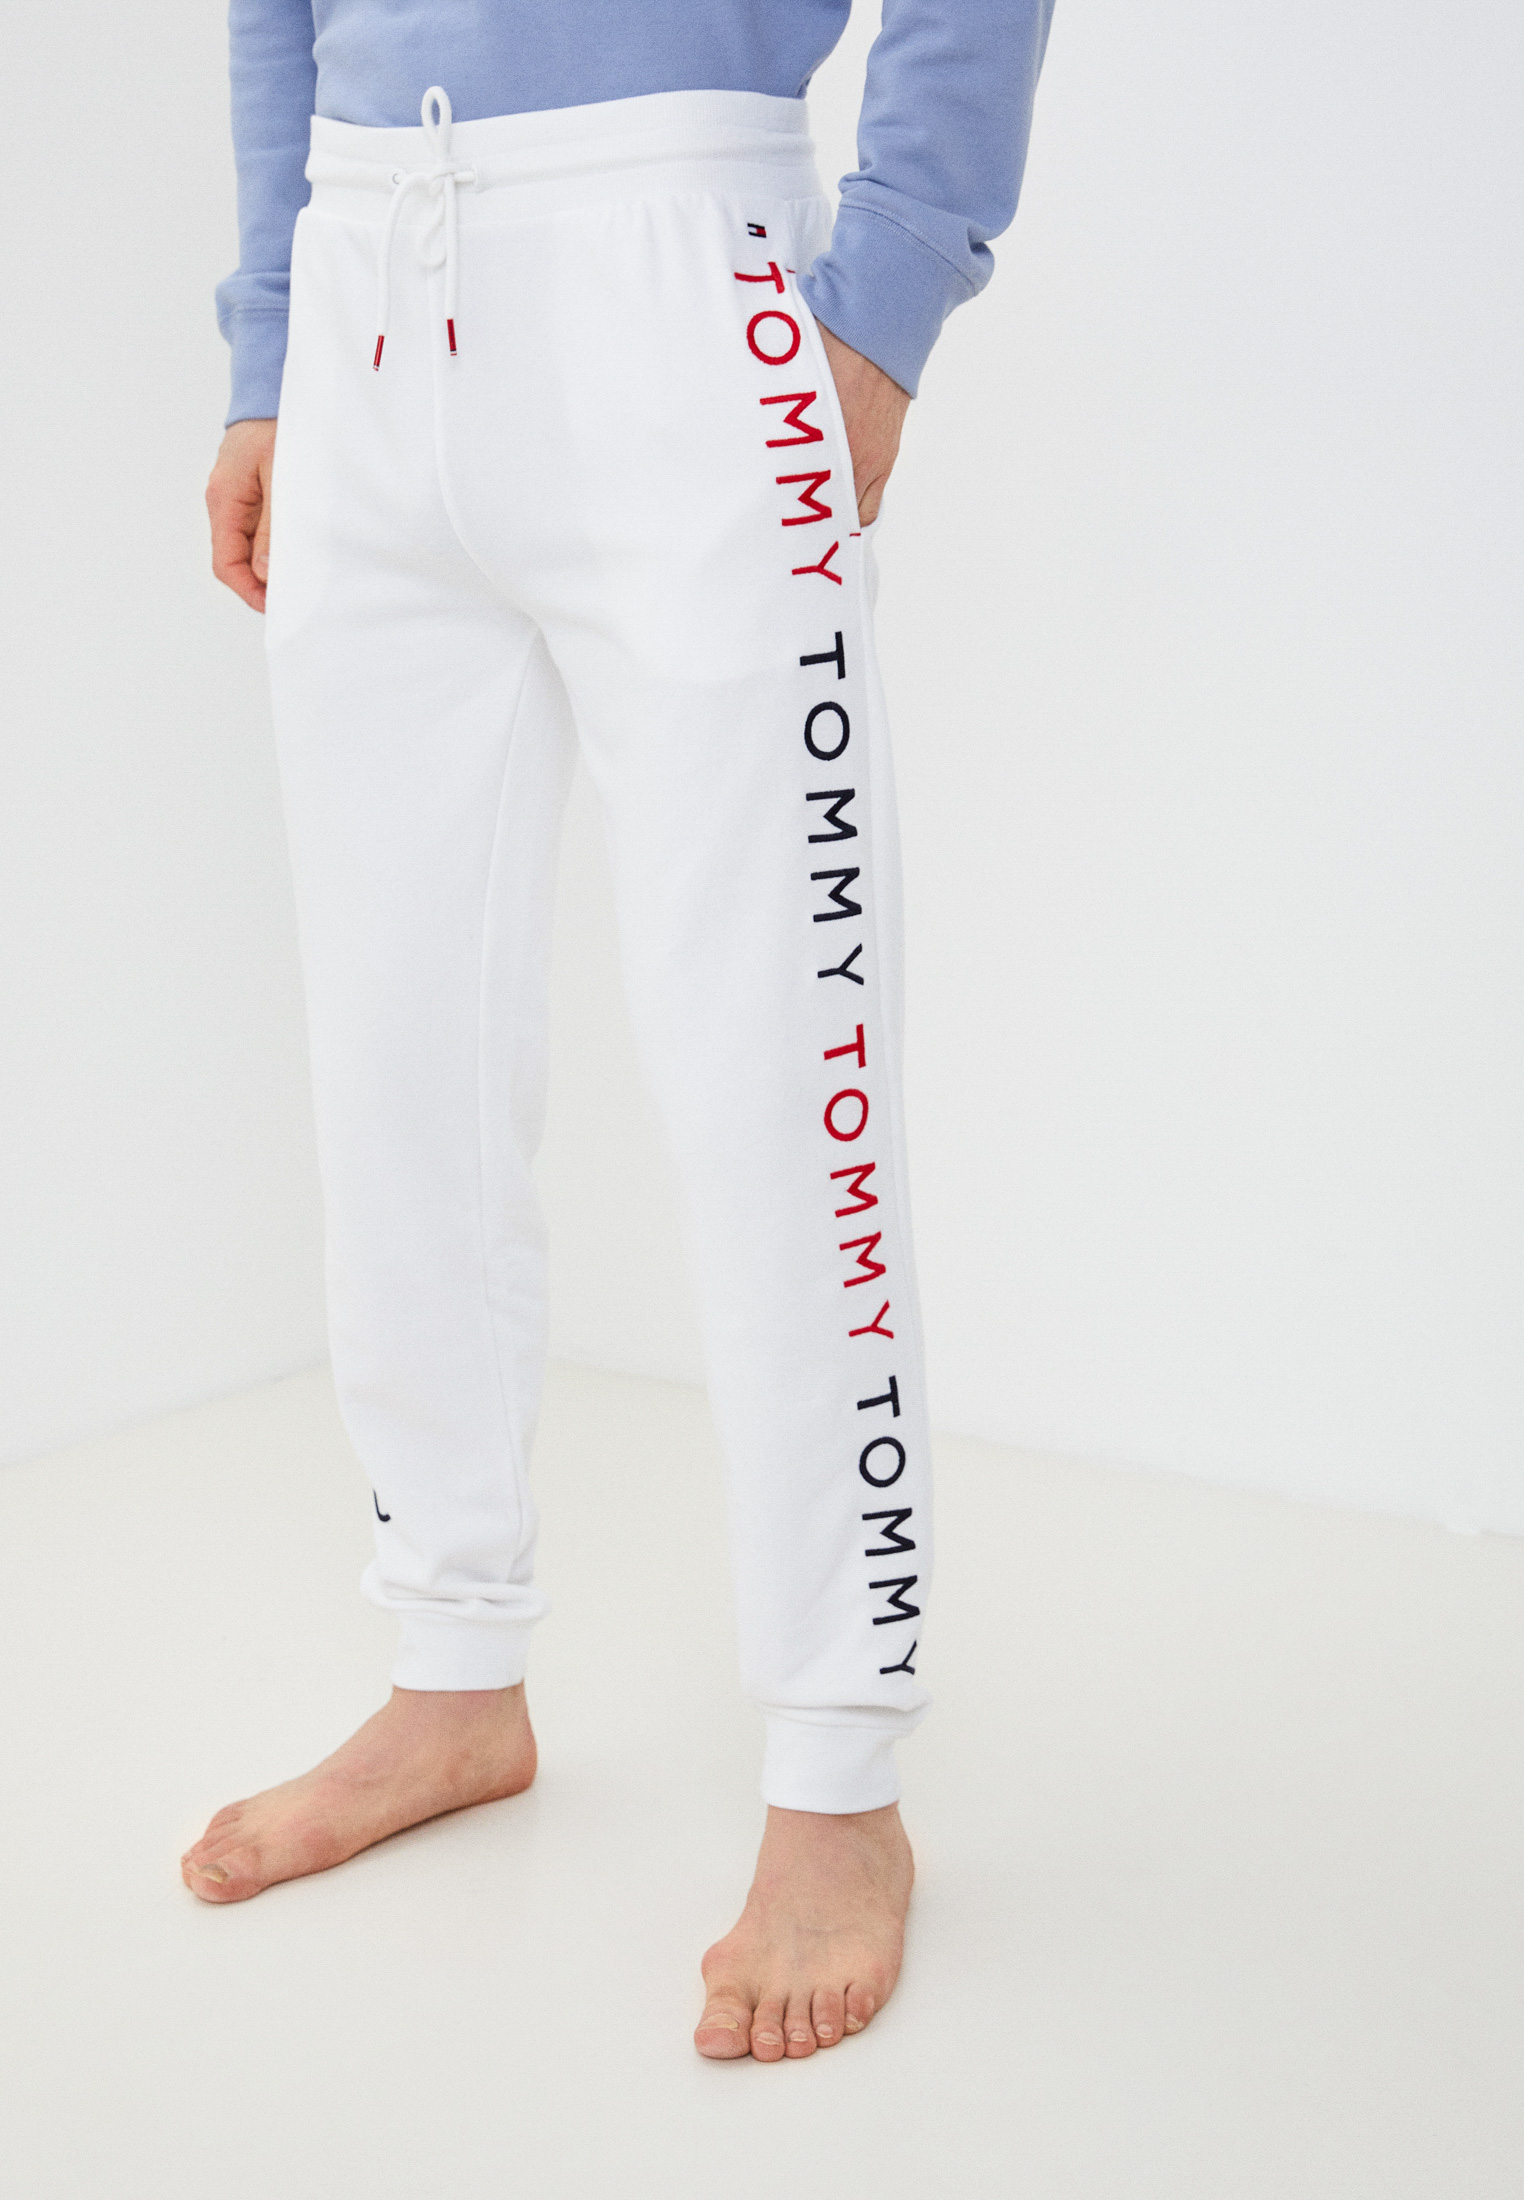 Мужские домашние брюки Tommy Hilfiger (Томми Хилфигер) UM0UM02145 цвет  белый купить за 8240 руб.